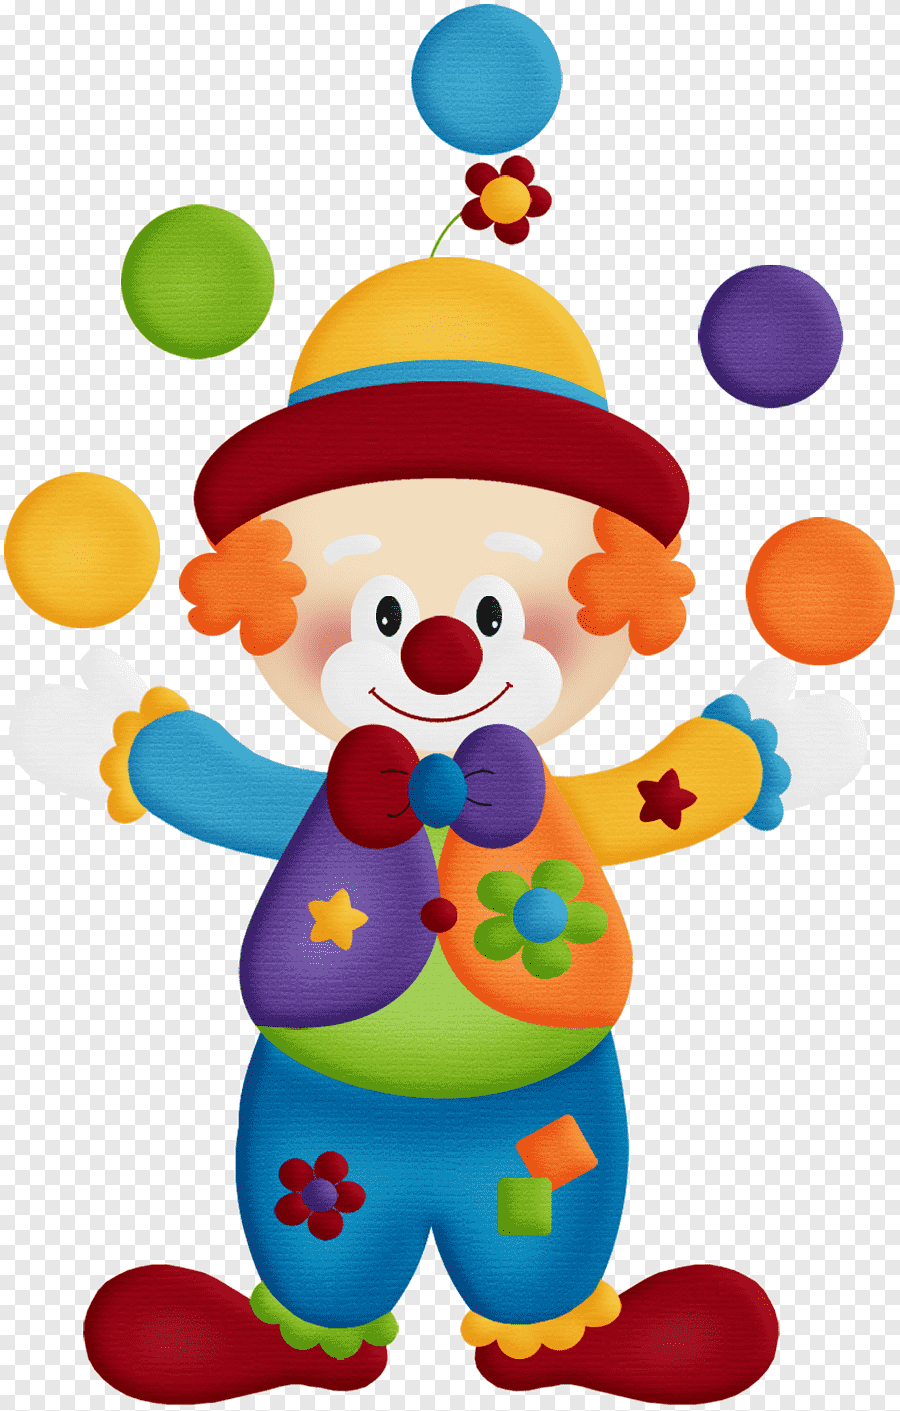 Клоун шаблон цветной. Клоуны для детей. Картина клоуна для детей. Клоун жонглер. Клоун мультяшный.